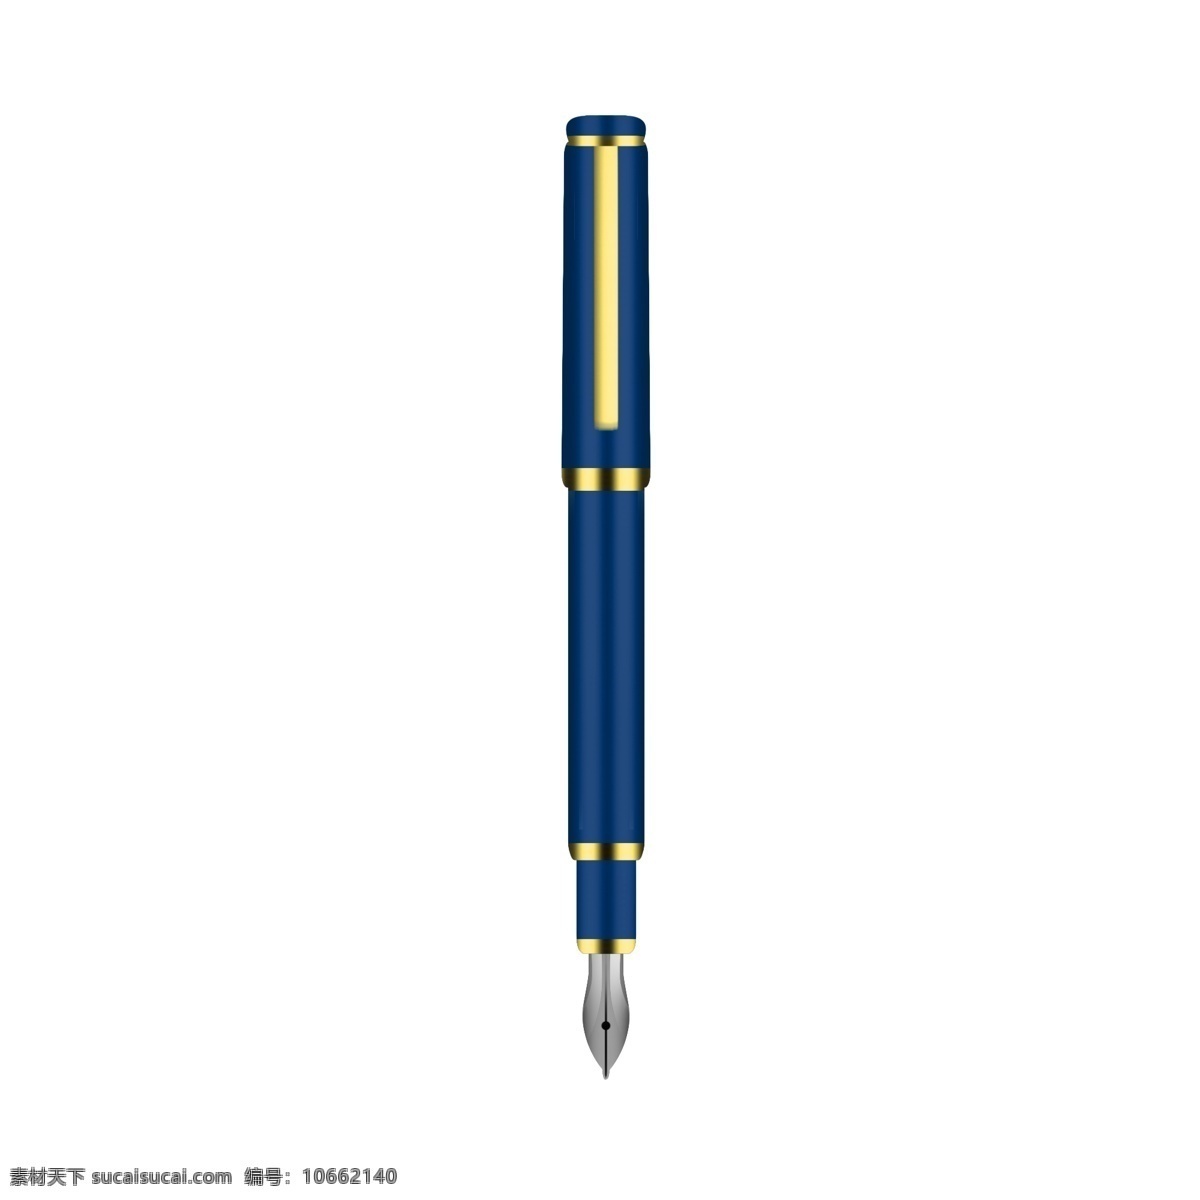 蓝色 钢笔 卡通 插画 蓝色的钢笔 卡通的插画 笔的插画 写字用笔 学习用品 文具的笔 钢笔的插画